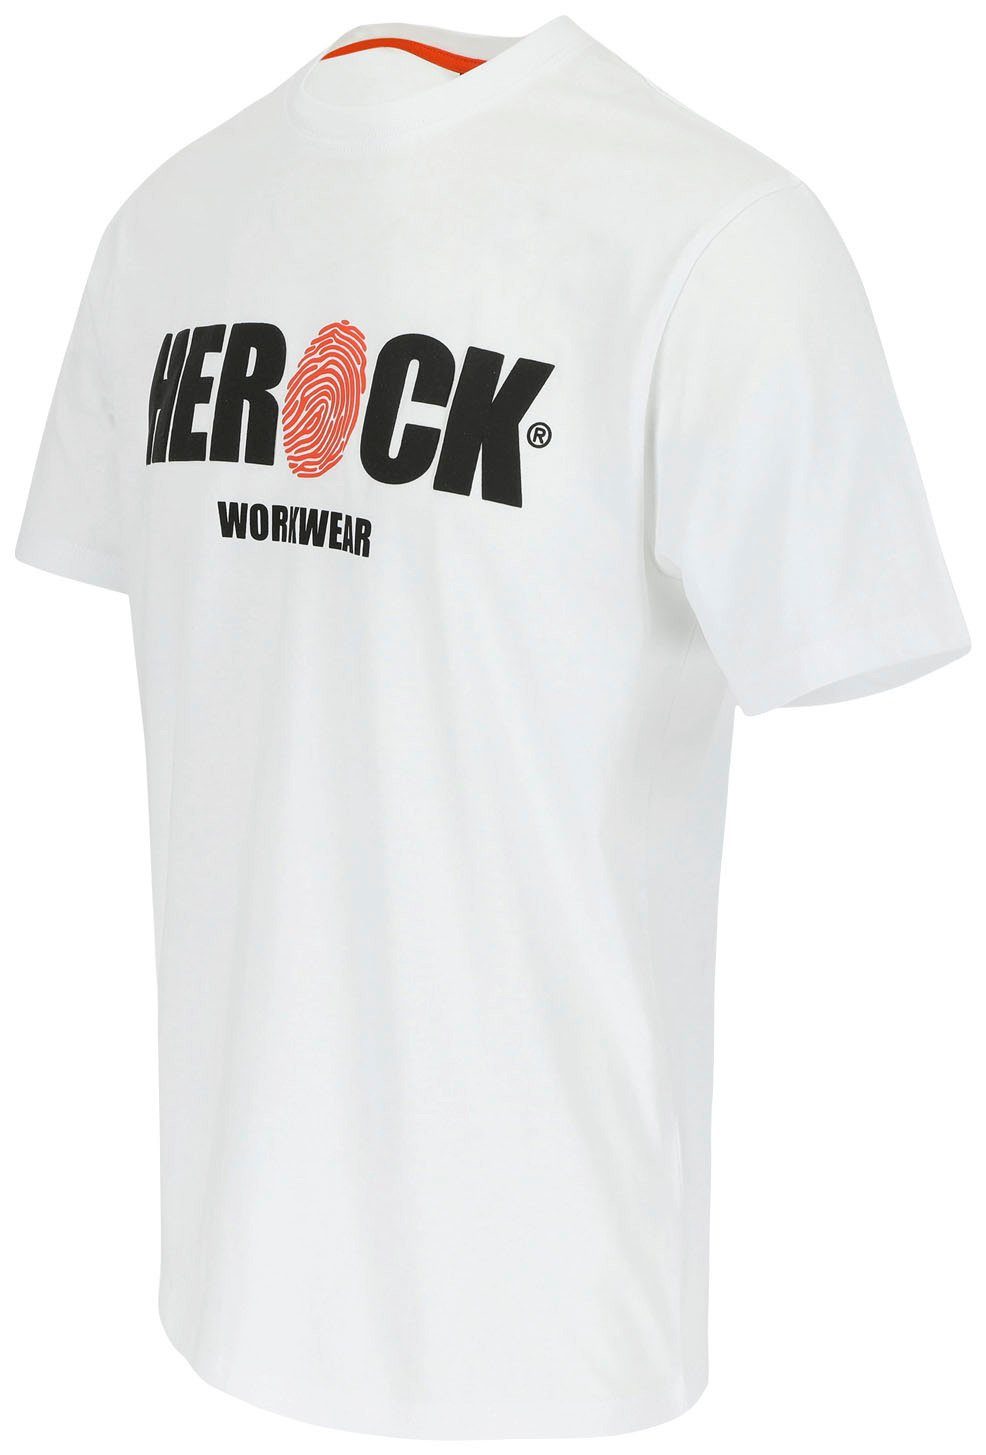 Herock T-Shirt ENI Baumwolle, Rundhals, Tragegefühl mit Herock®-Aufdruck, weiß angenehmes